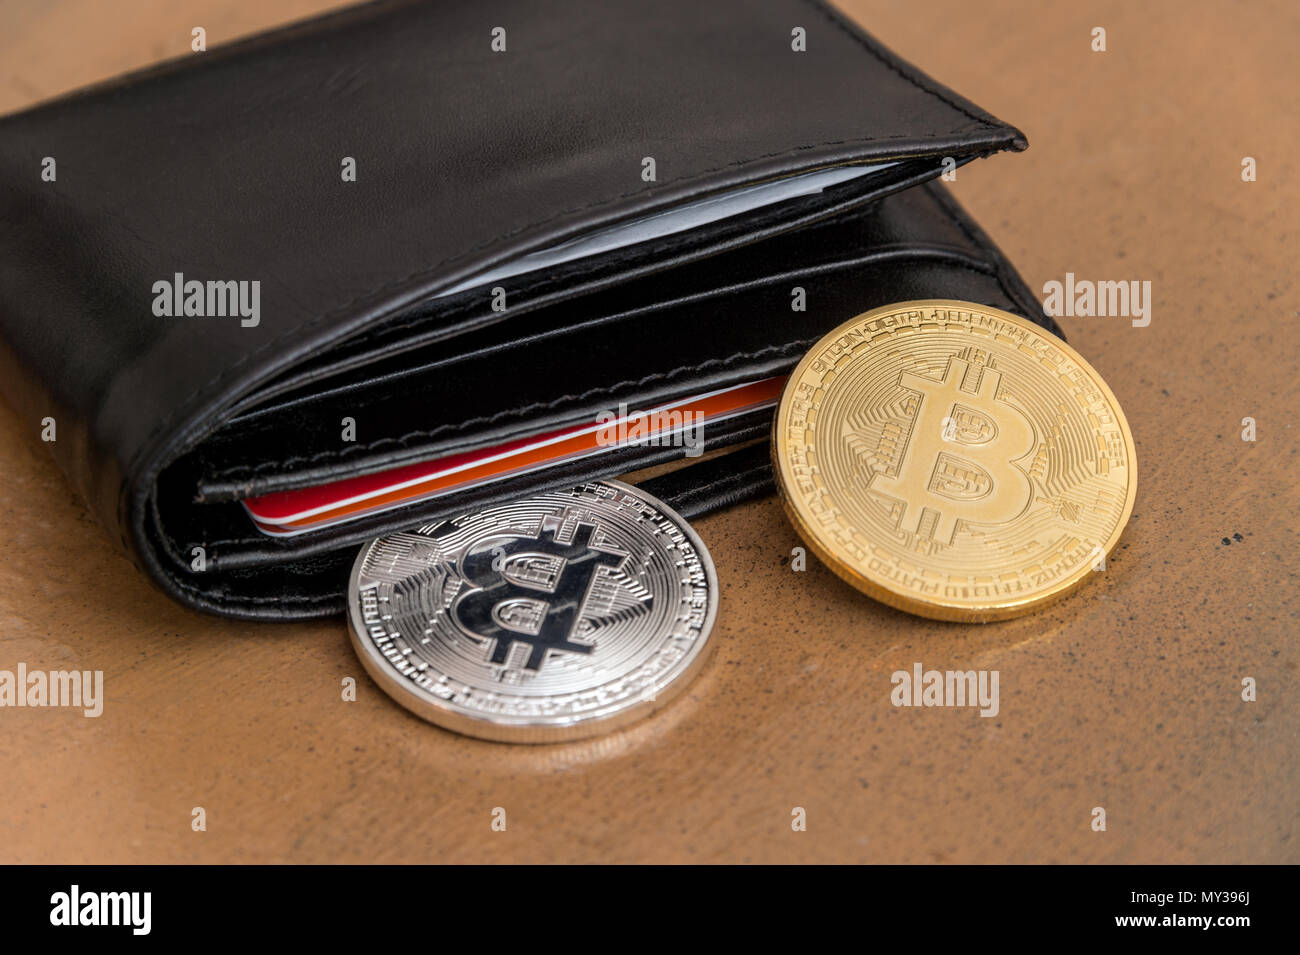 Deux pièces métalliques Bitcoin cryptocurrency sort une pochette en cuir Banque D'Images